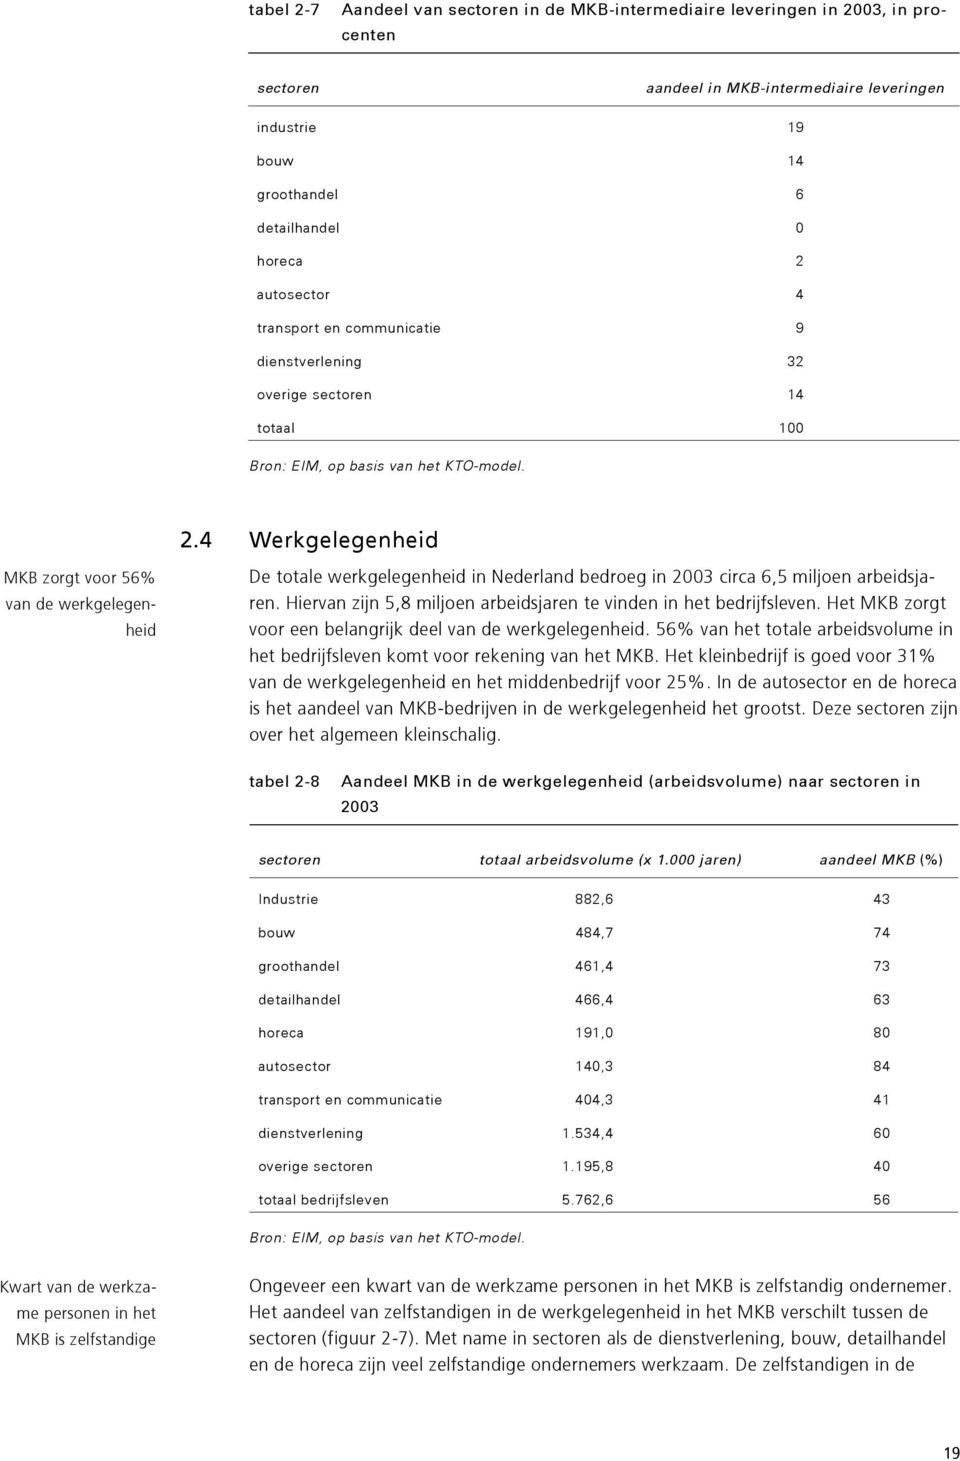 4 Werkgelegenheid MKB zorgt voor 56% van de werkgelegenheid De totale werkgelegenheid in Nederland bedroeg in 2003 circa 6,5 miljoen arbeidsjaren.